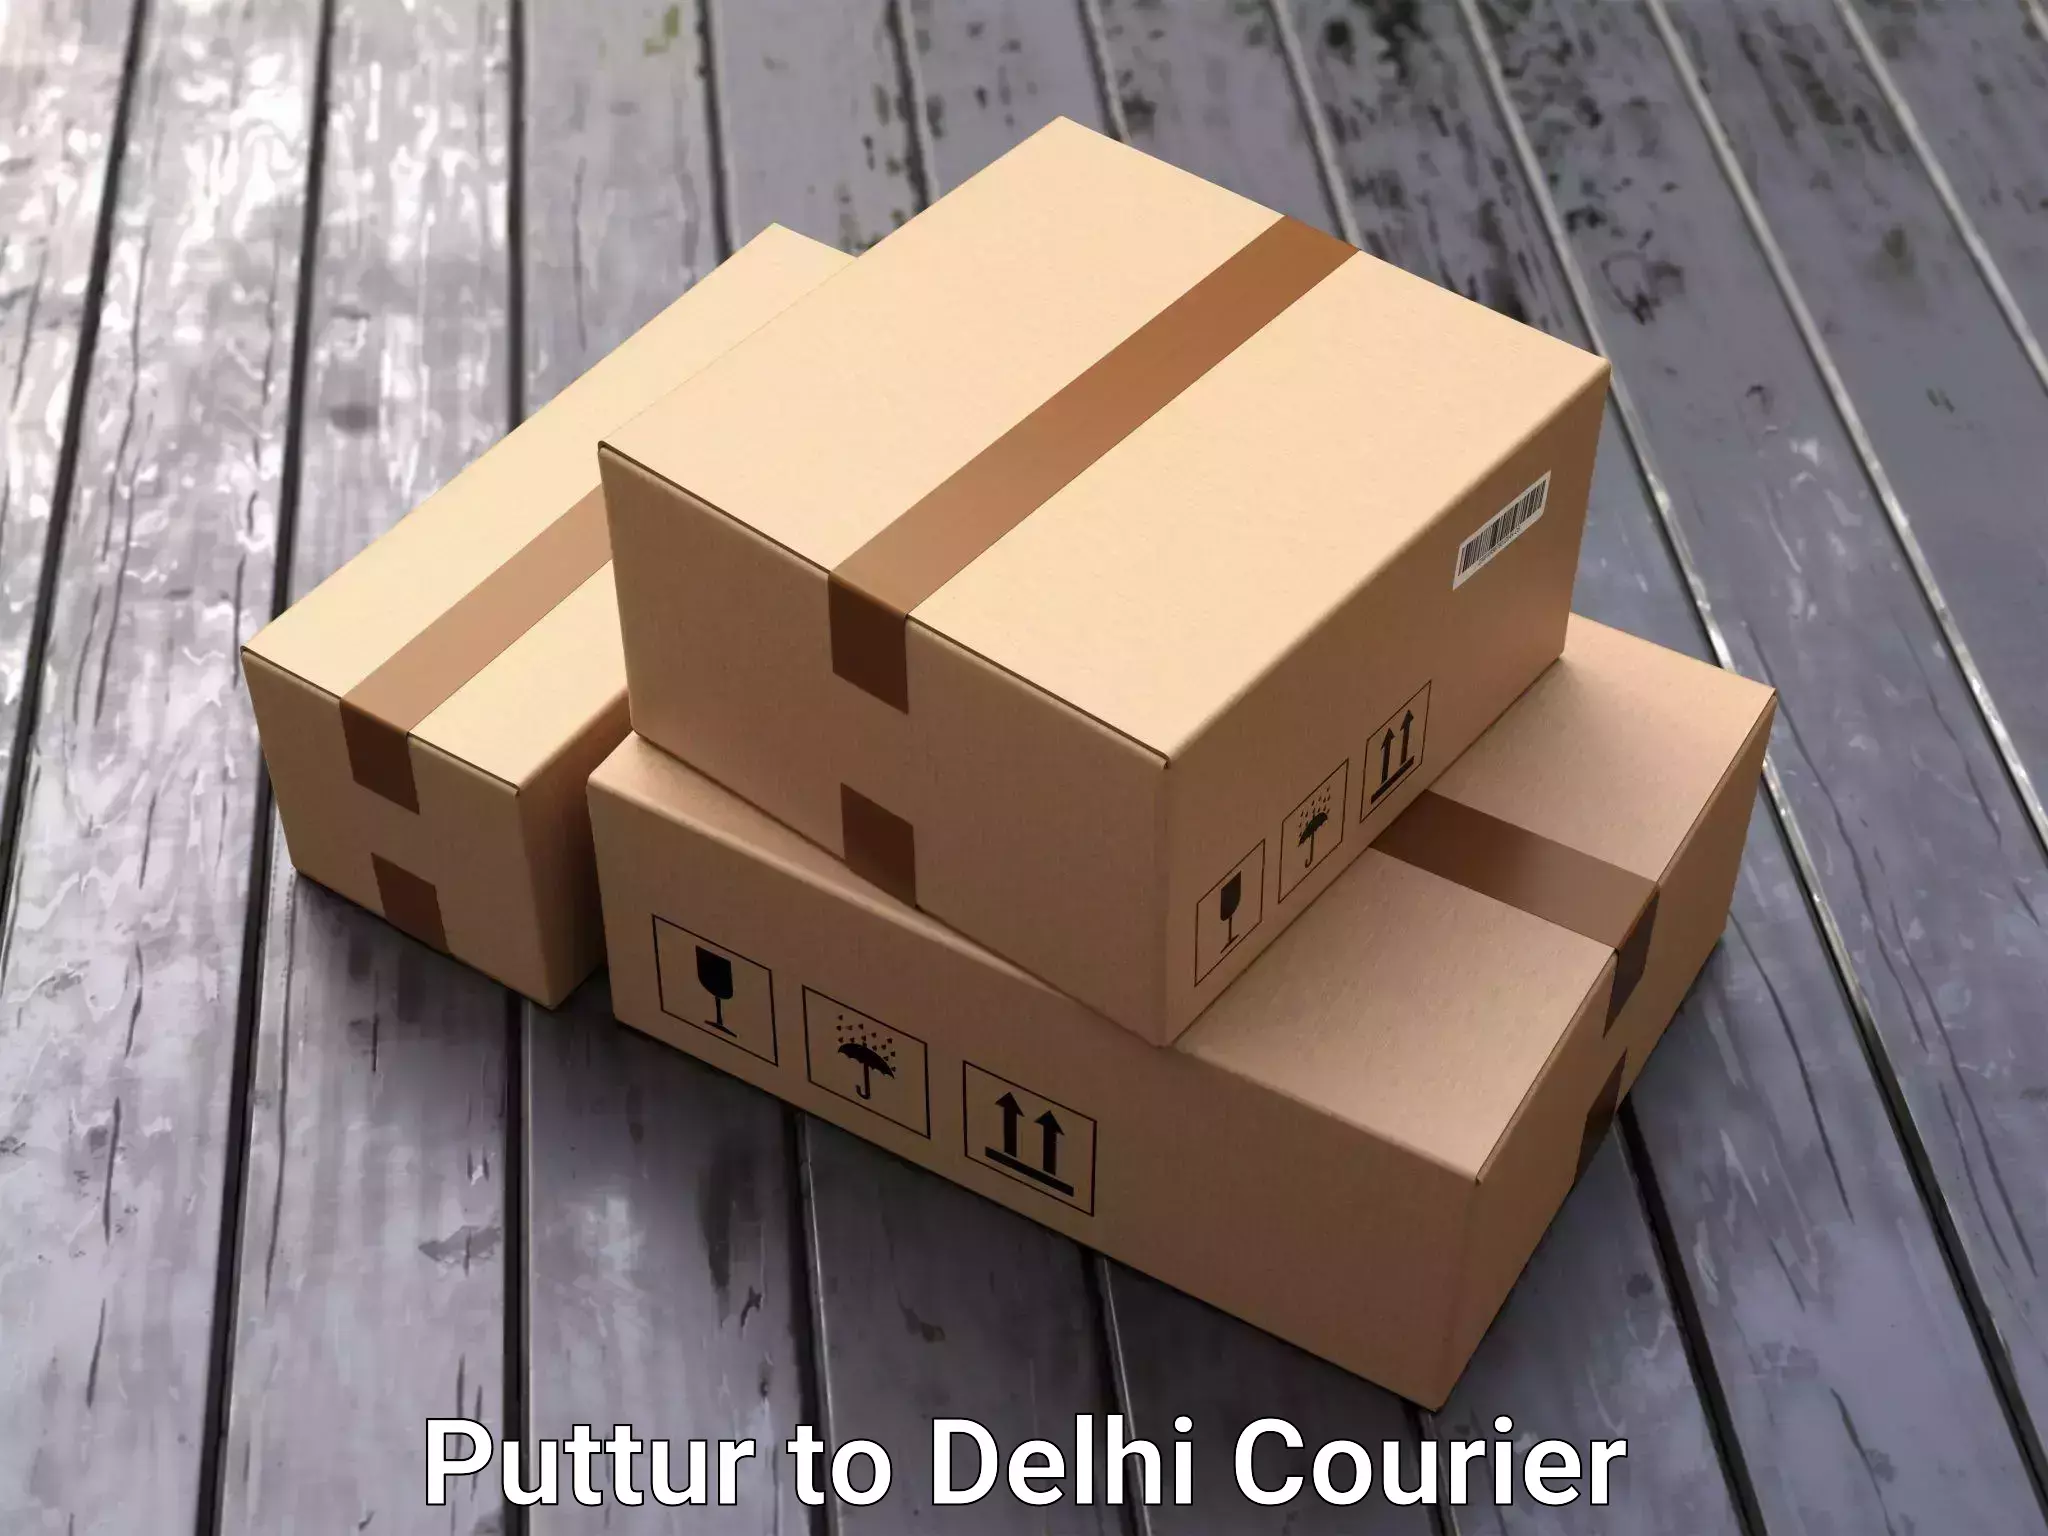 Efficient furniture shifting Puttur to Delhi